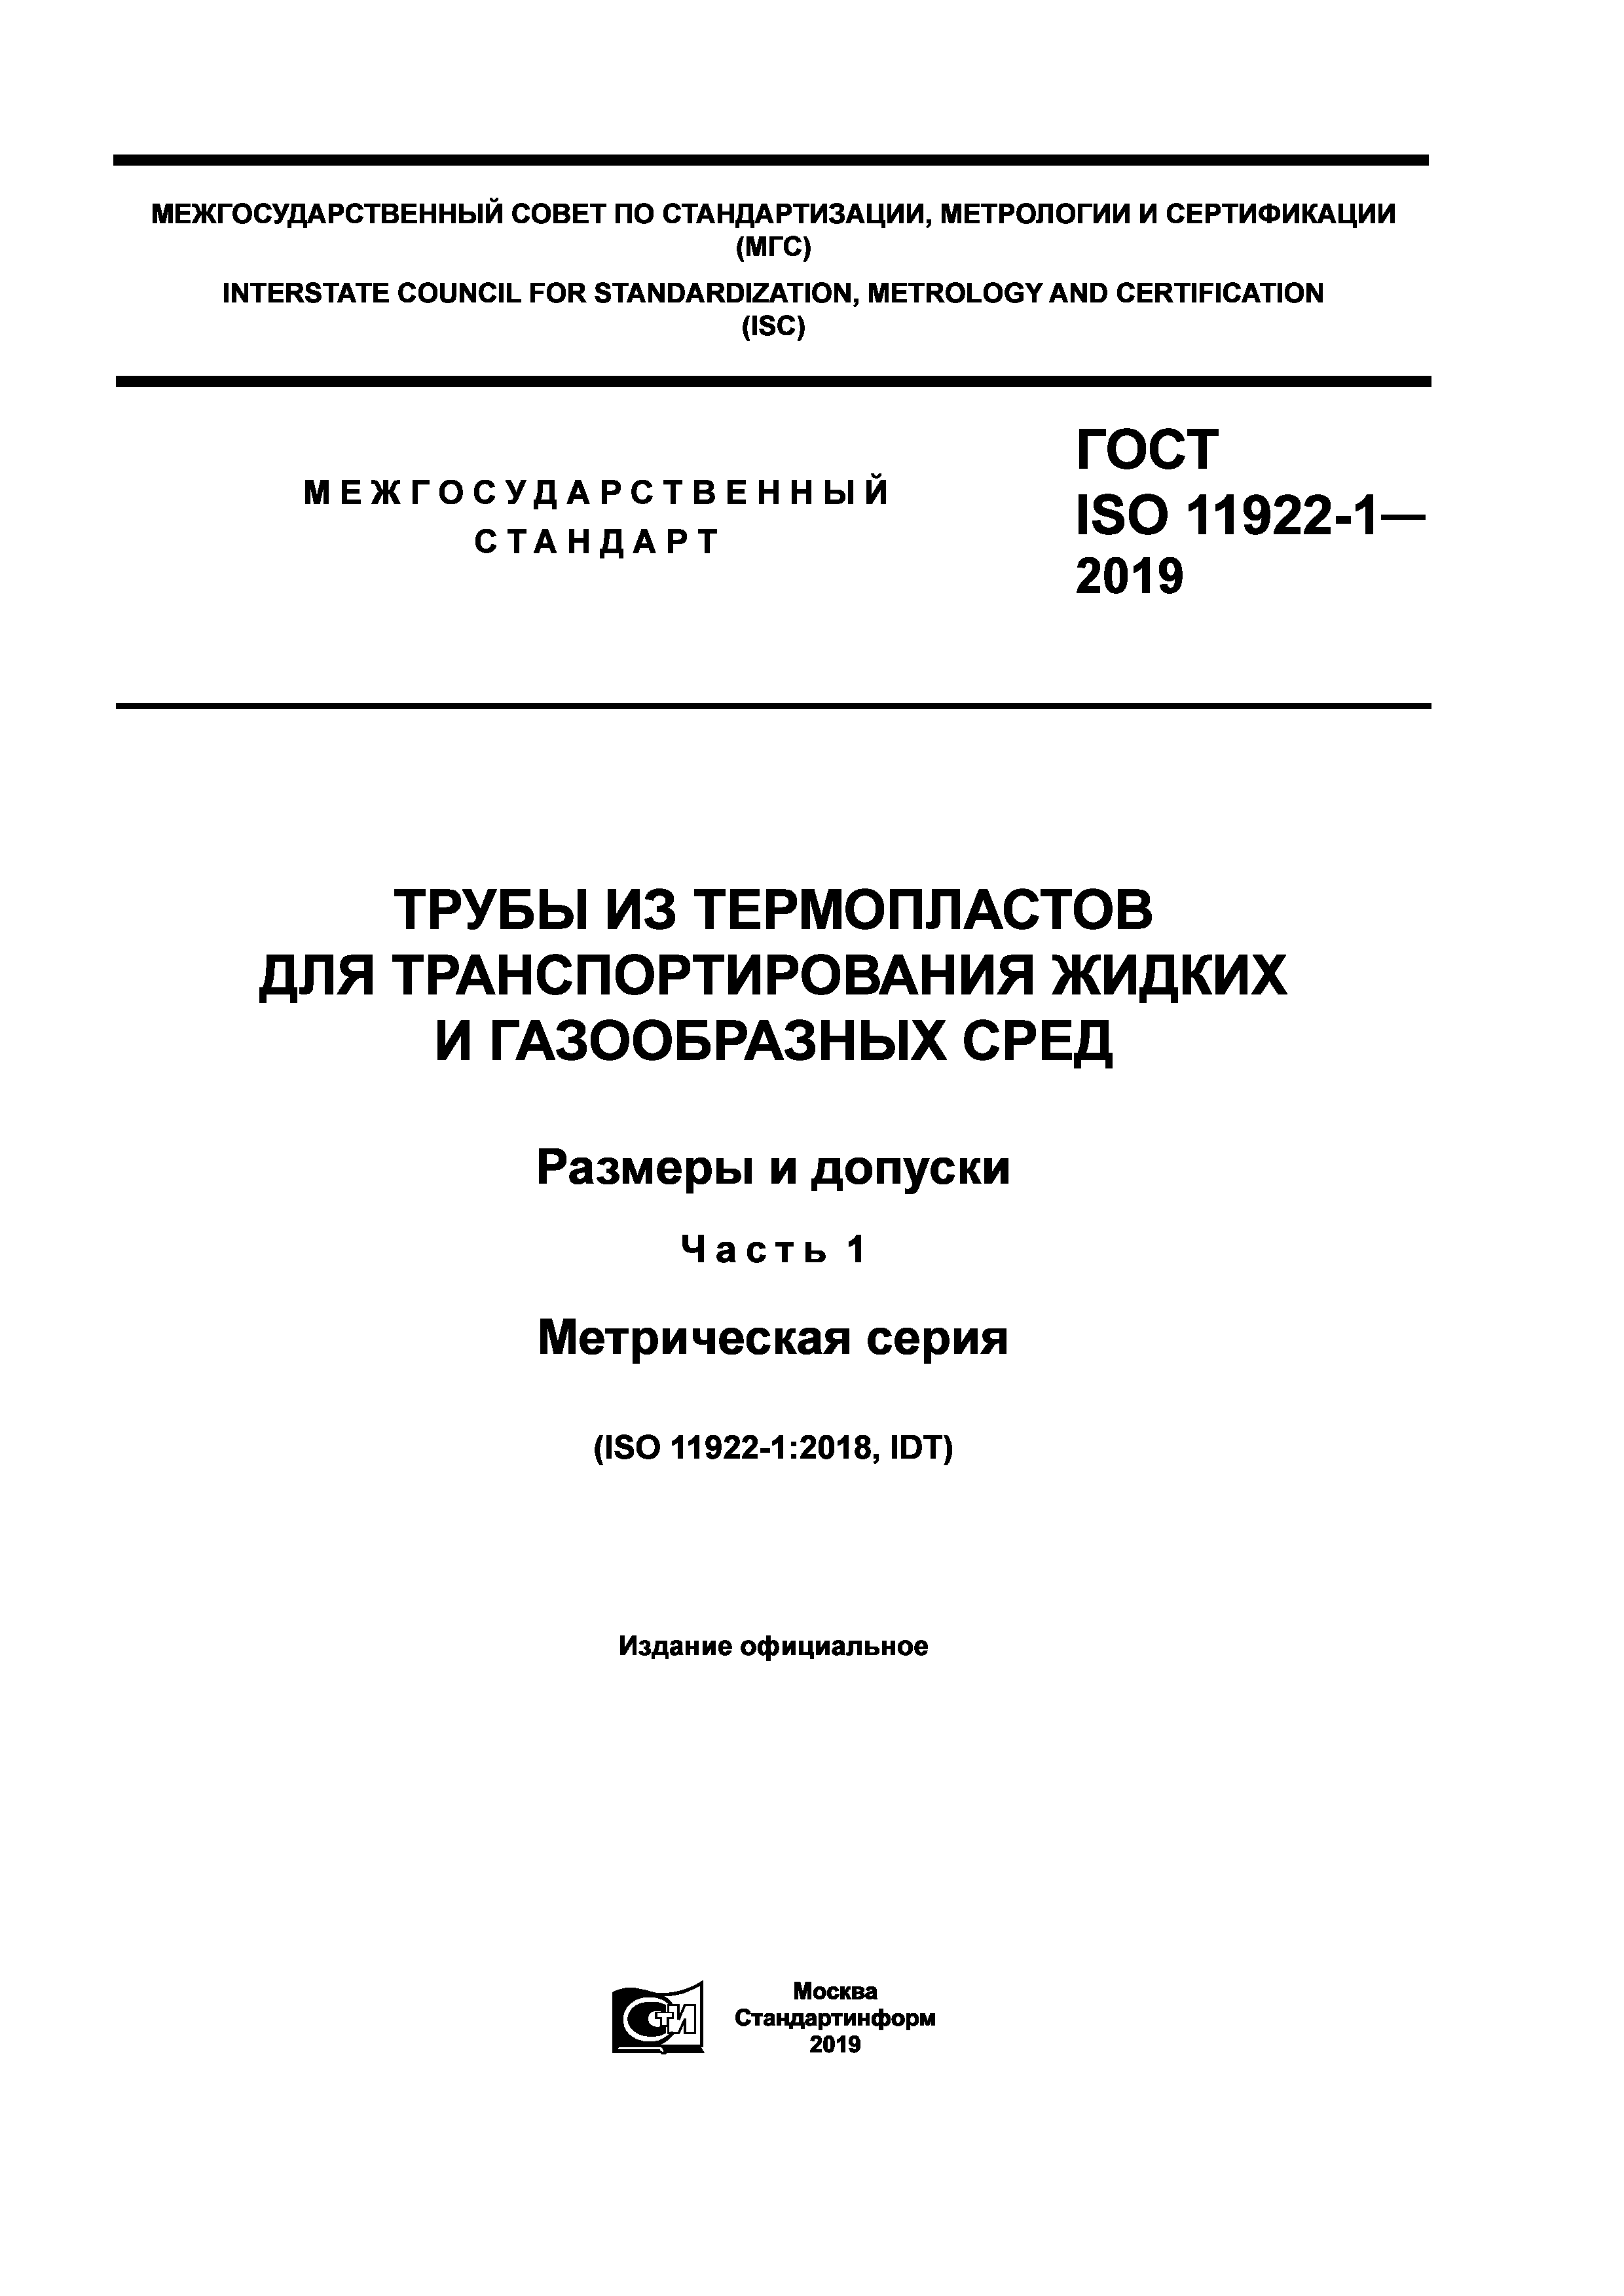 ГОСТ ISO 11922-1-2019